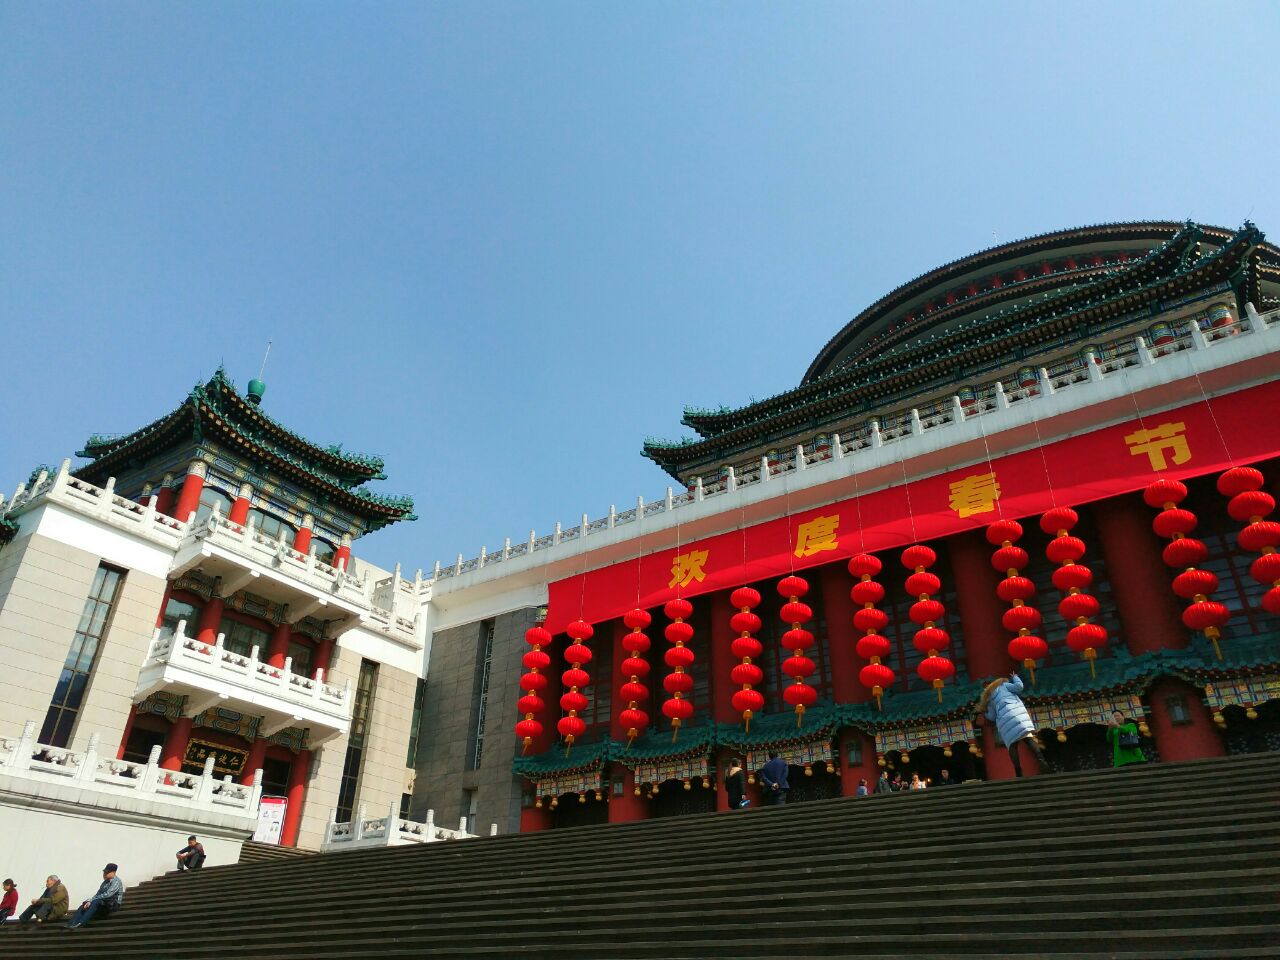 【高清图】重庆人民大礼堂-中关村在线摄影论坛